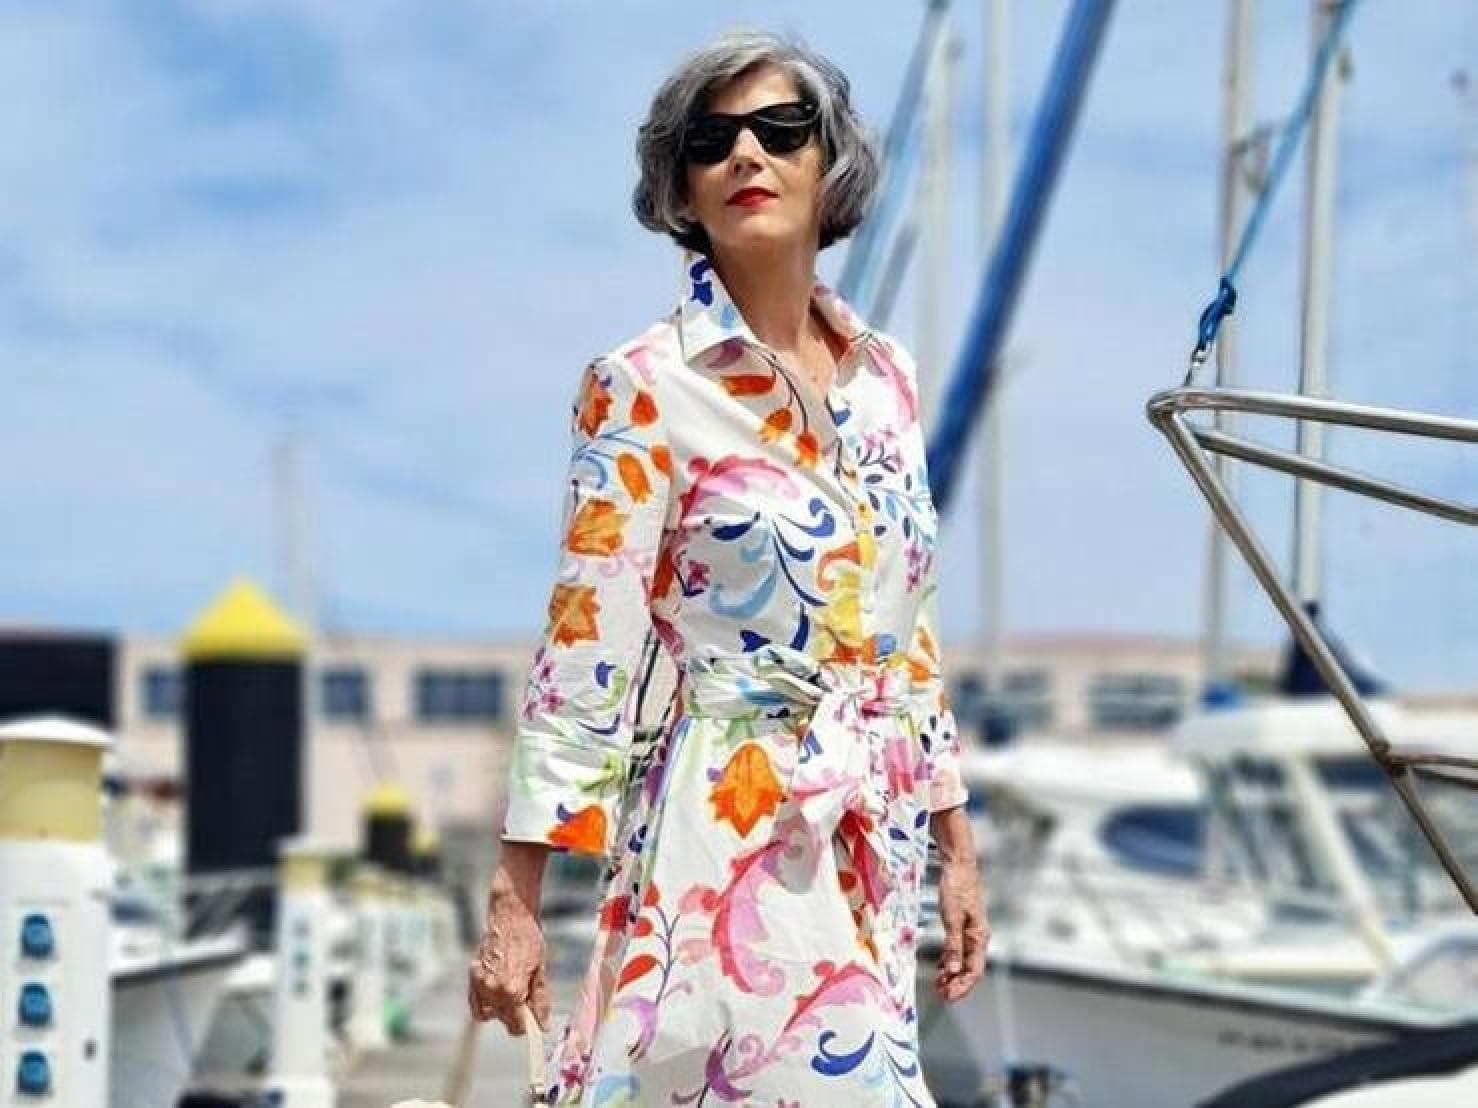 Reproducir Excepcional basura Fotos: Estos vestidos estampados largos y midi son los más vendidos de Mango  esta primavera porque rejuvenecen a los 40 | Mujer Hoy